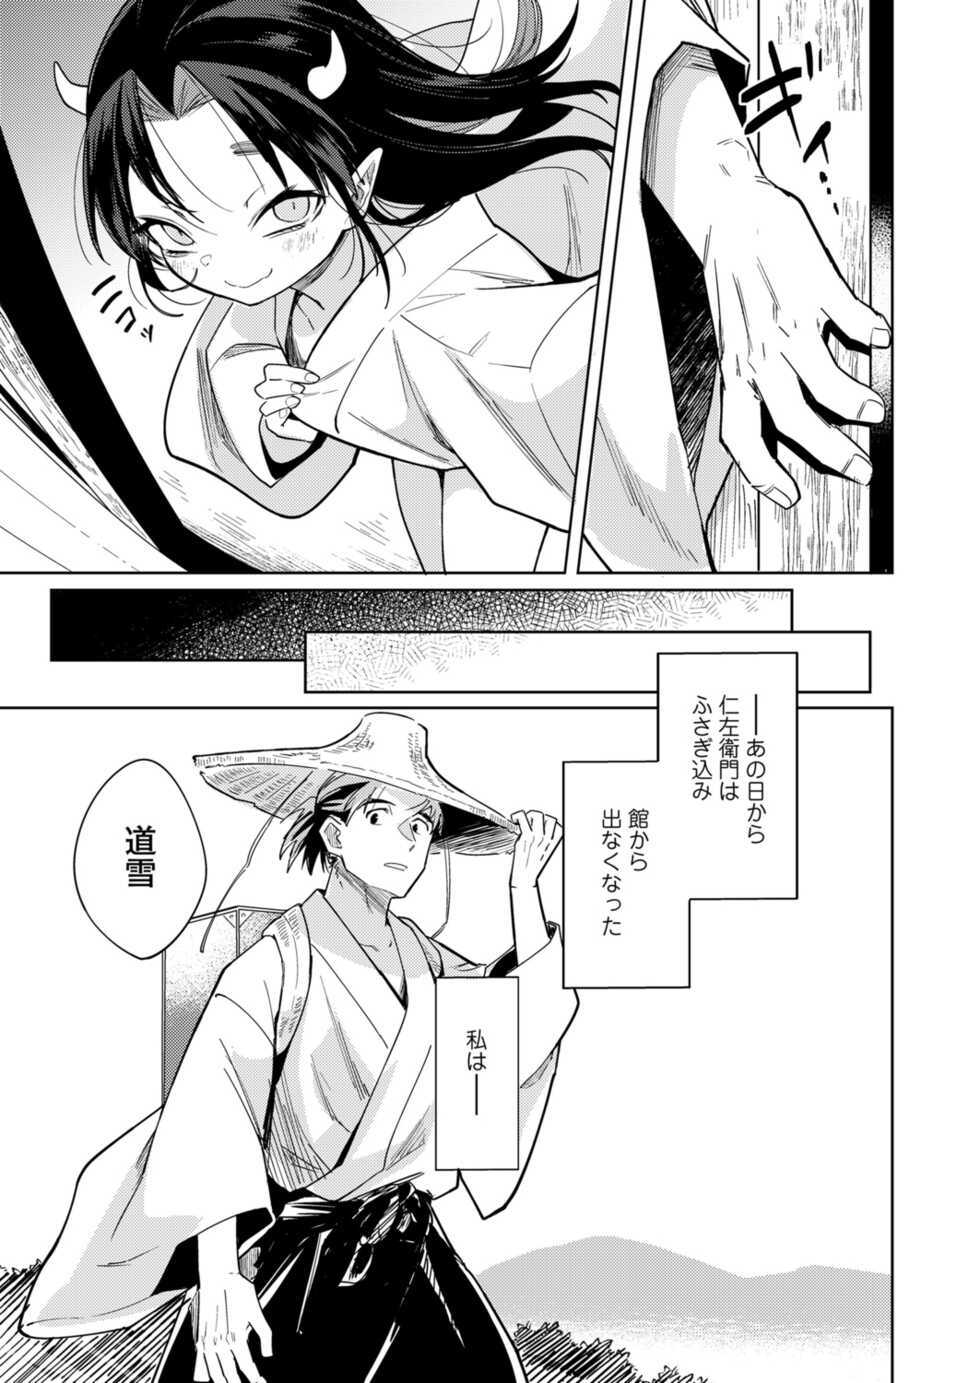 Towako 12 [Digital] - Page 33